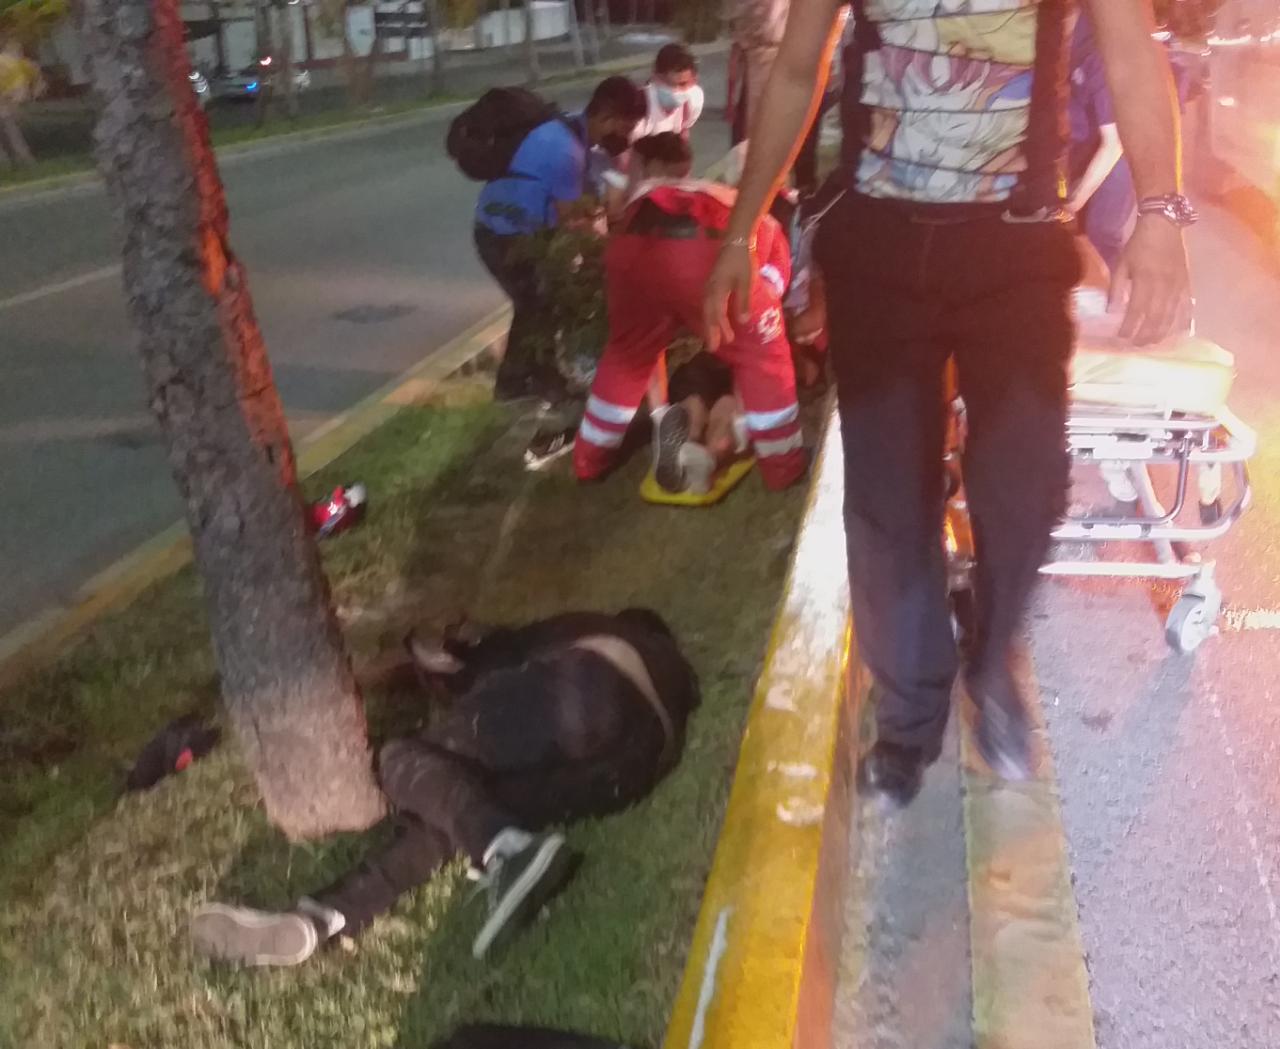 Derrapan dos en moto; sobrevive el que llevaba casco – Pedro Canché Noticias